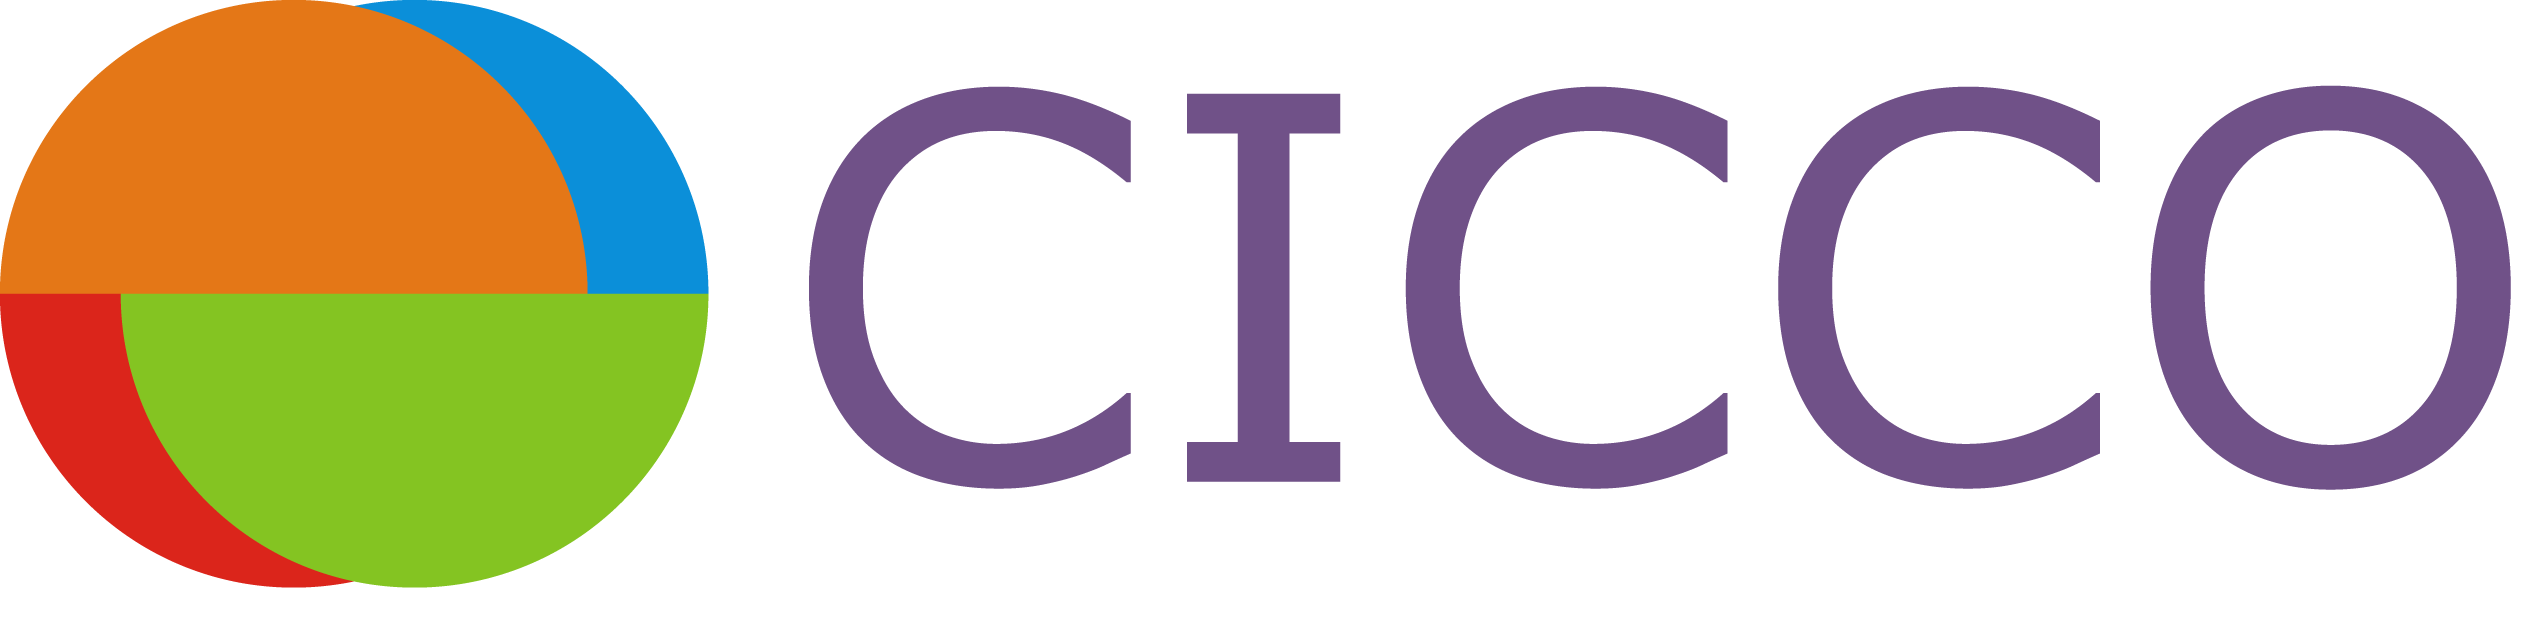 Logo Cicco